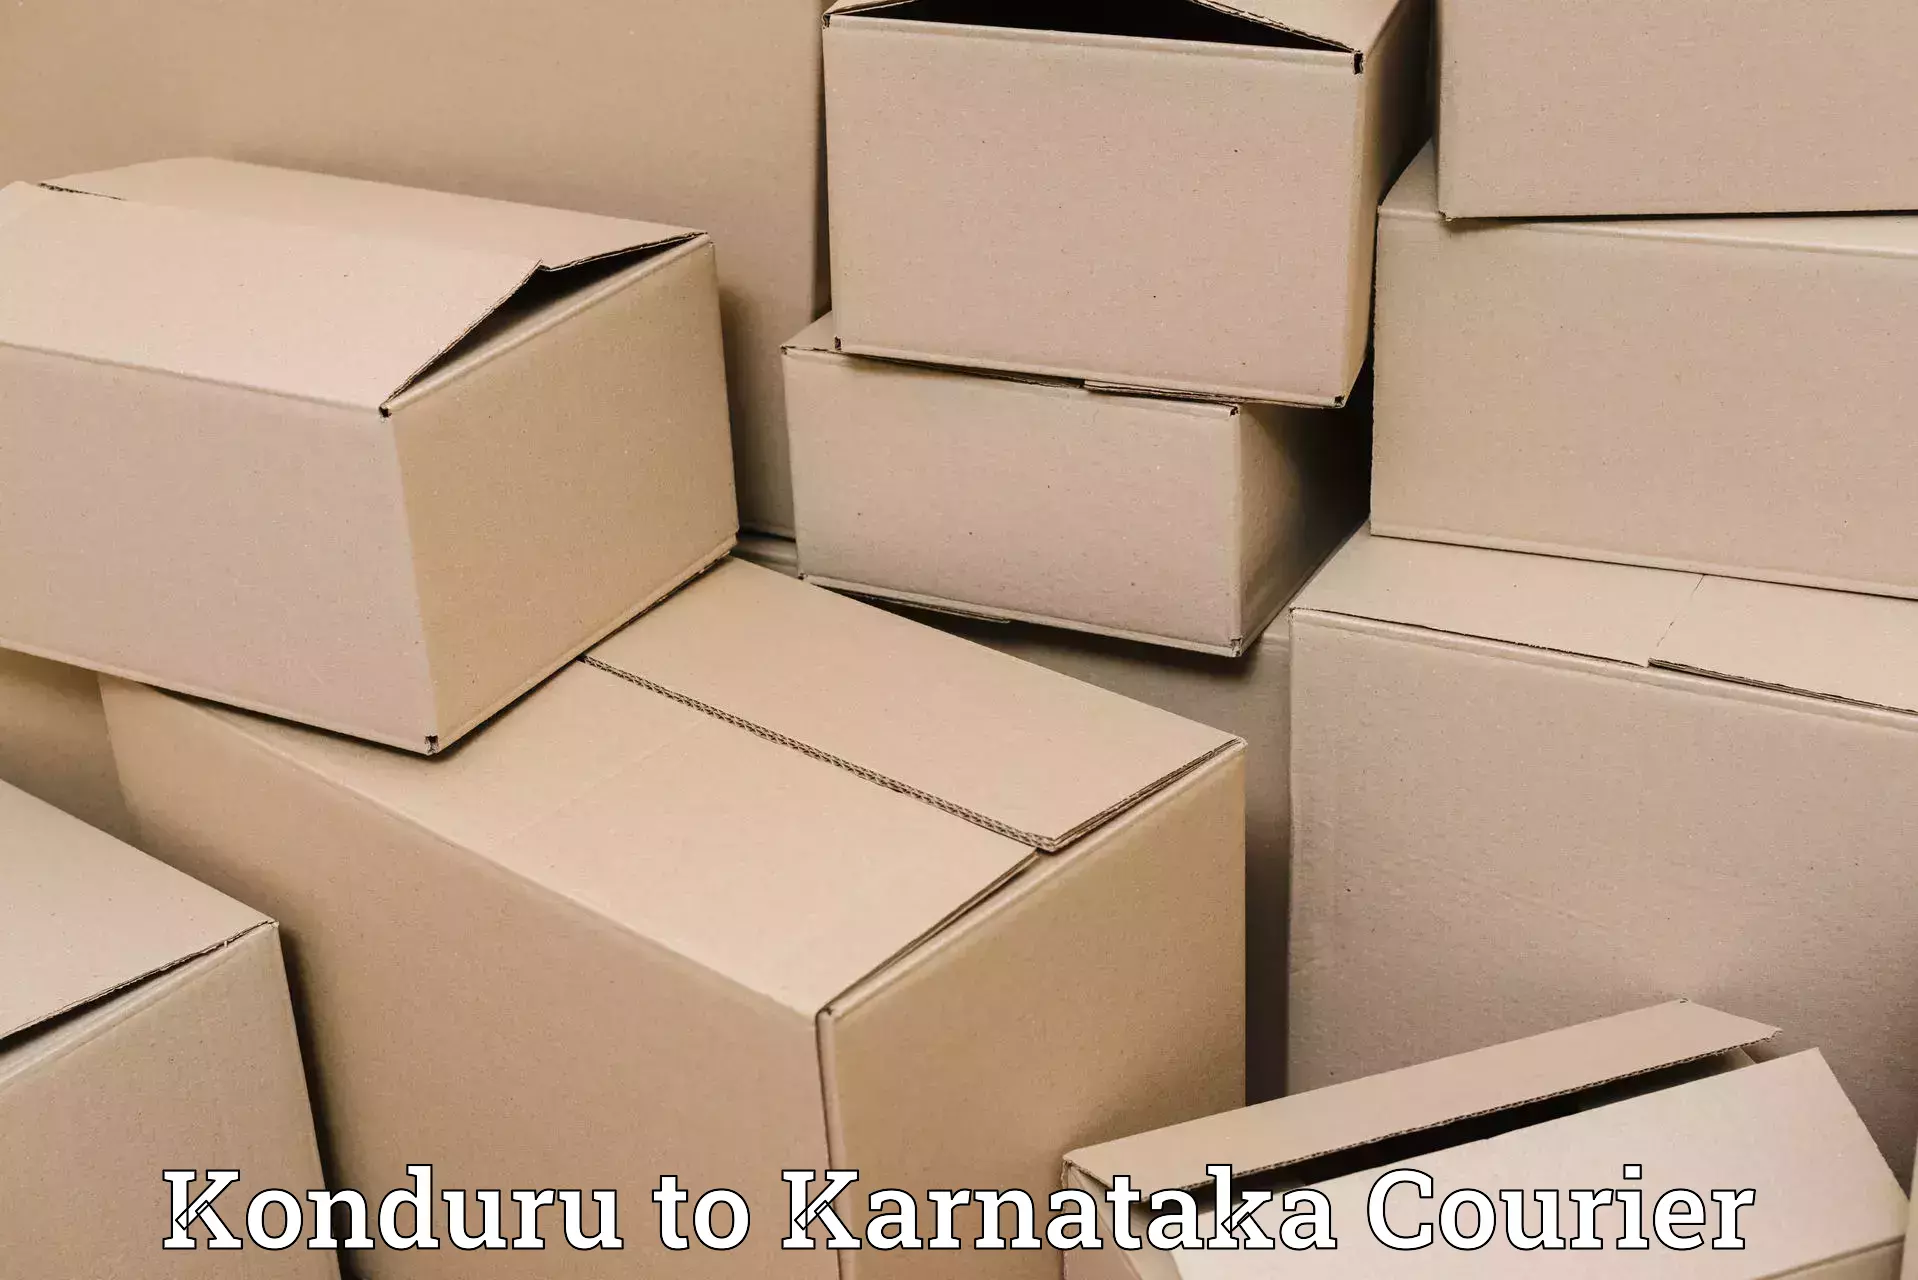 Online shipping calculator Konduru to Kotturu